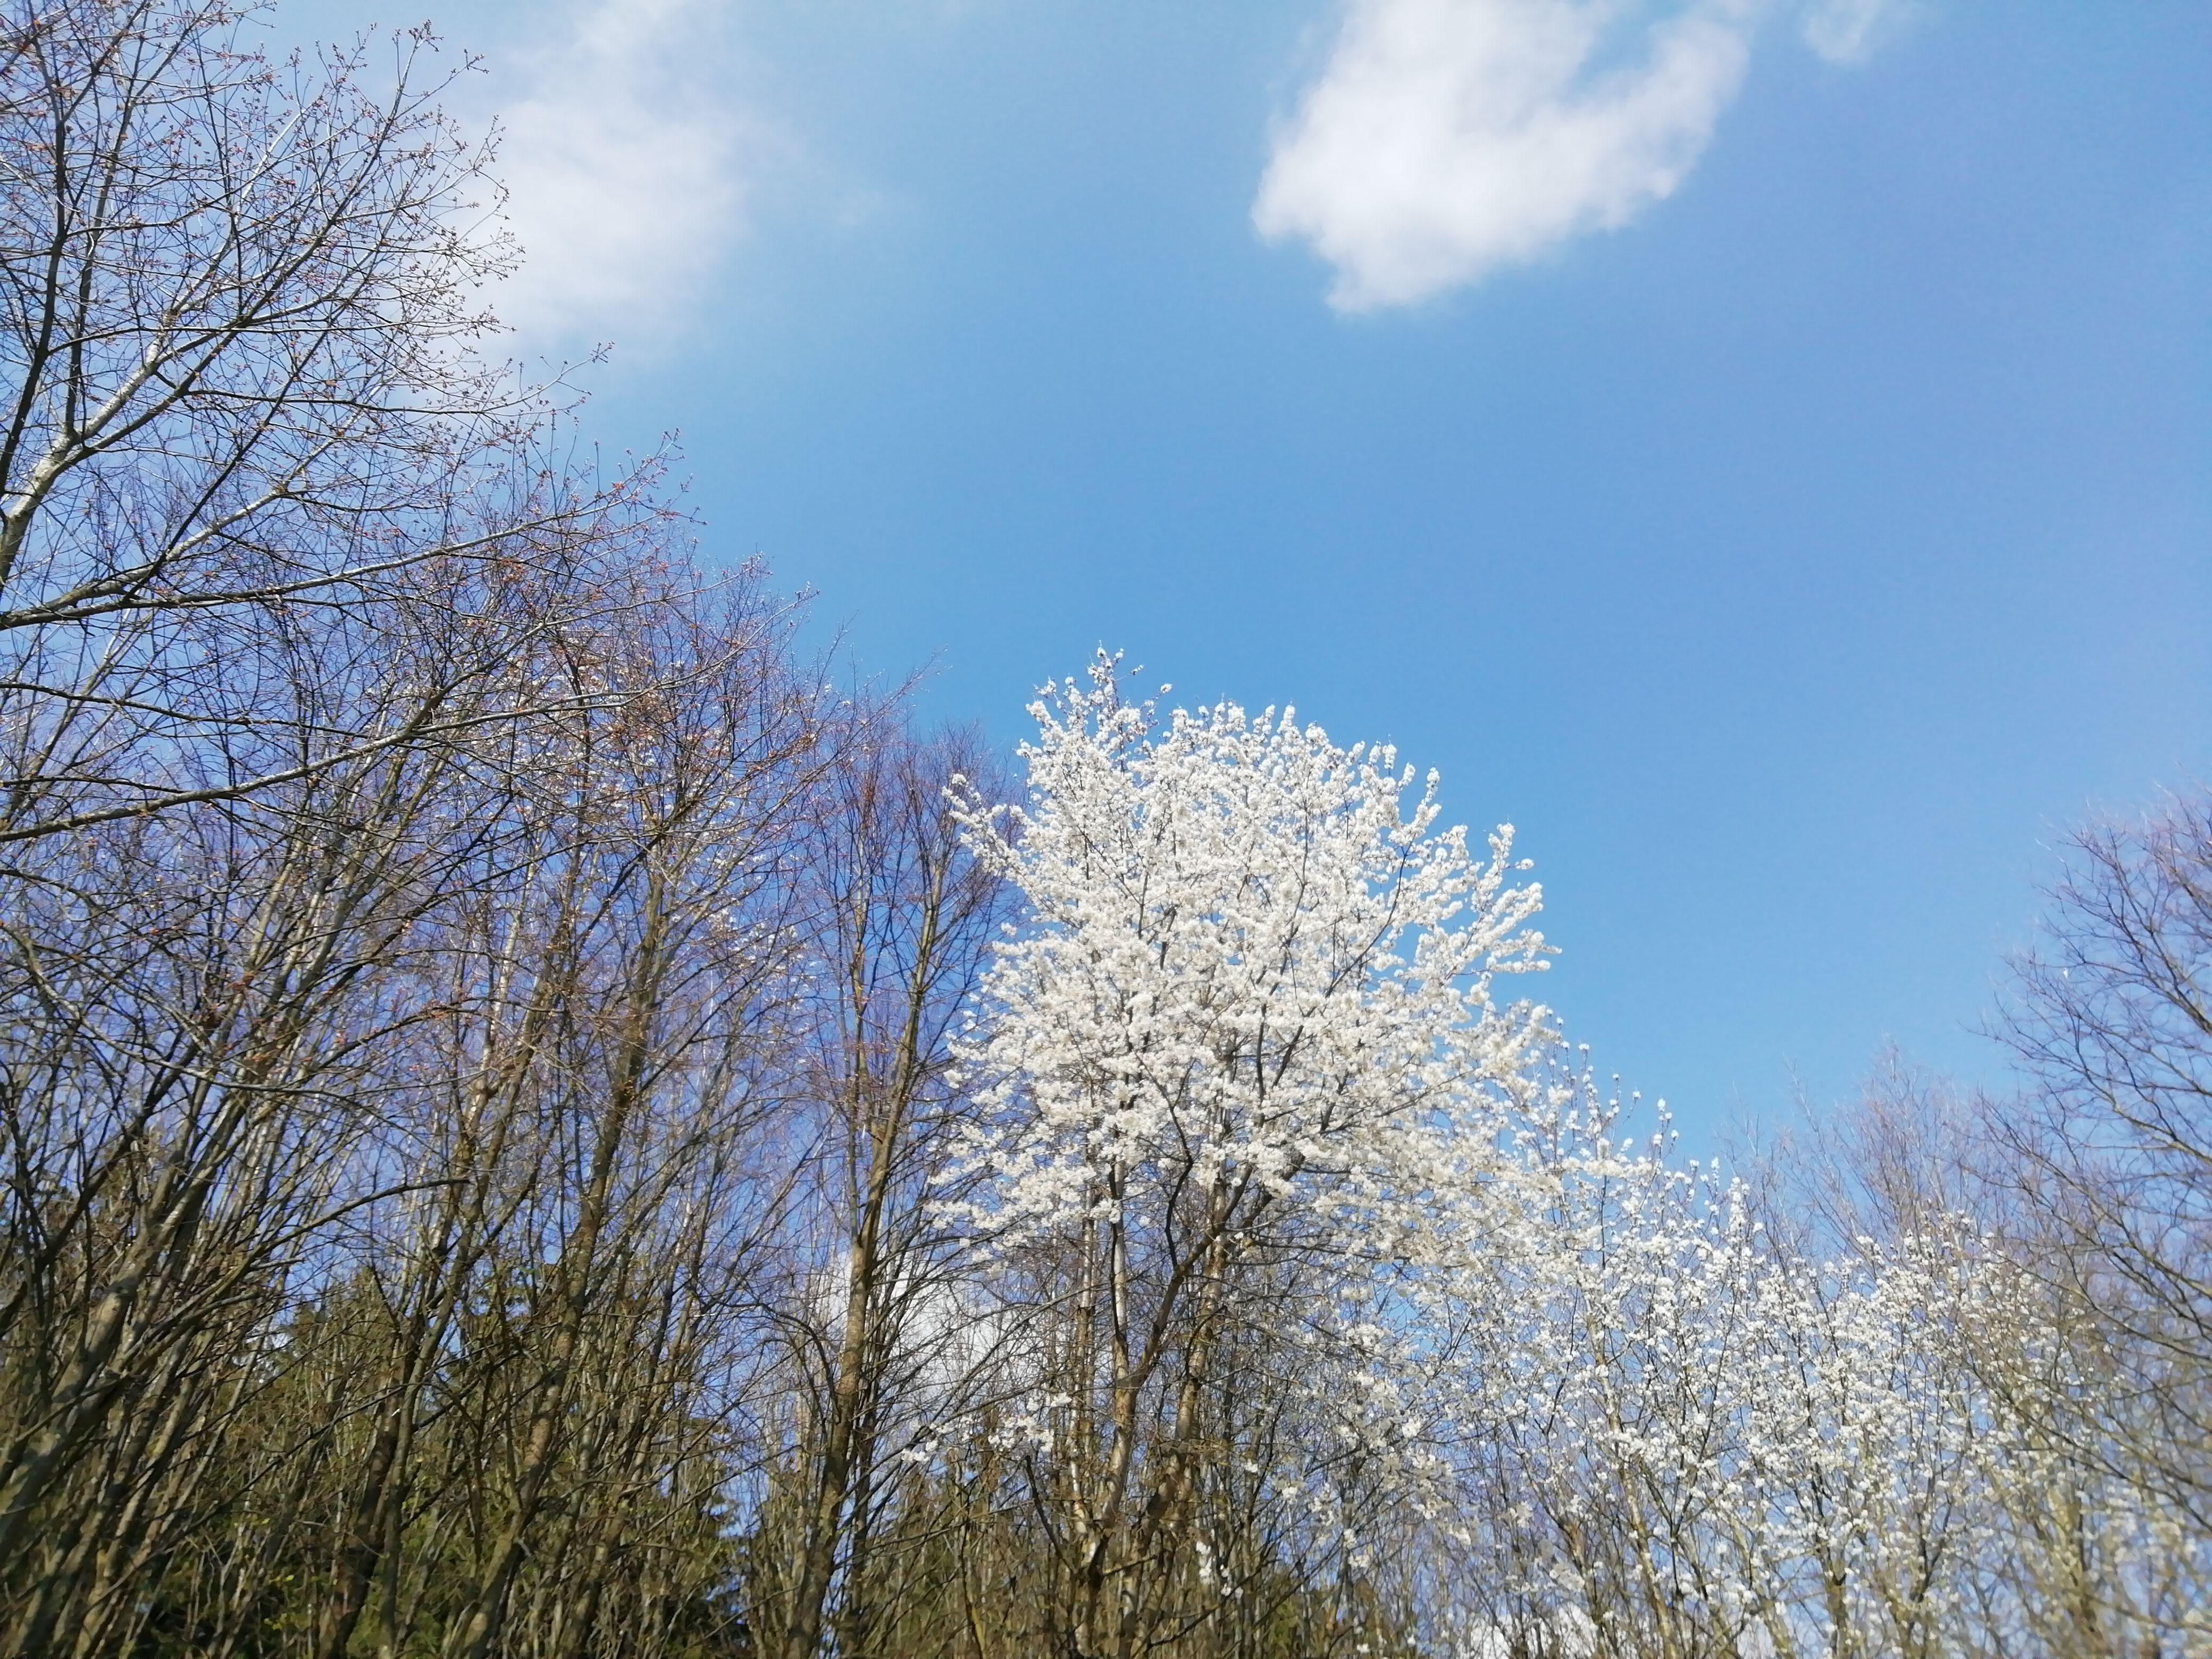 Aprilwetter 2019 anfangs recht warm. Beginnende Kirschblüte schon Anfang April